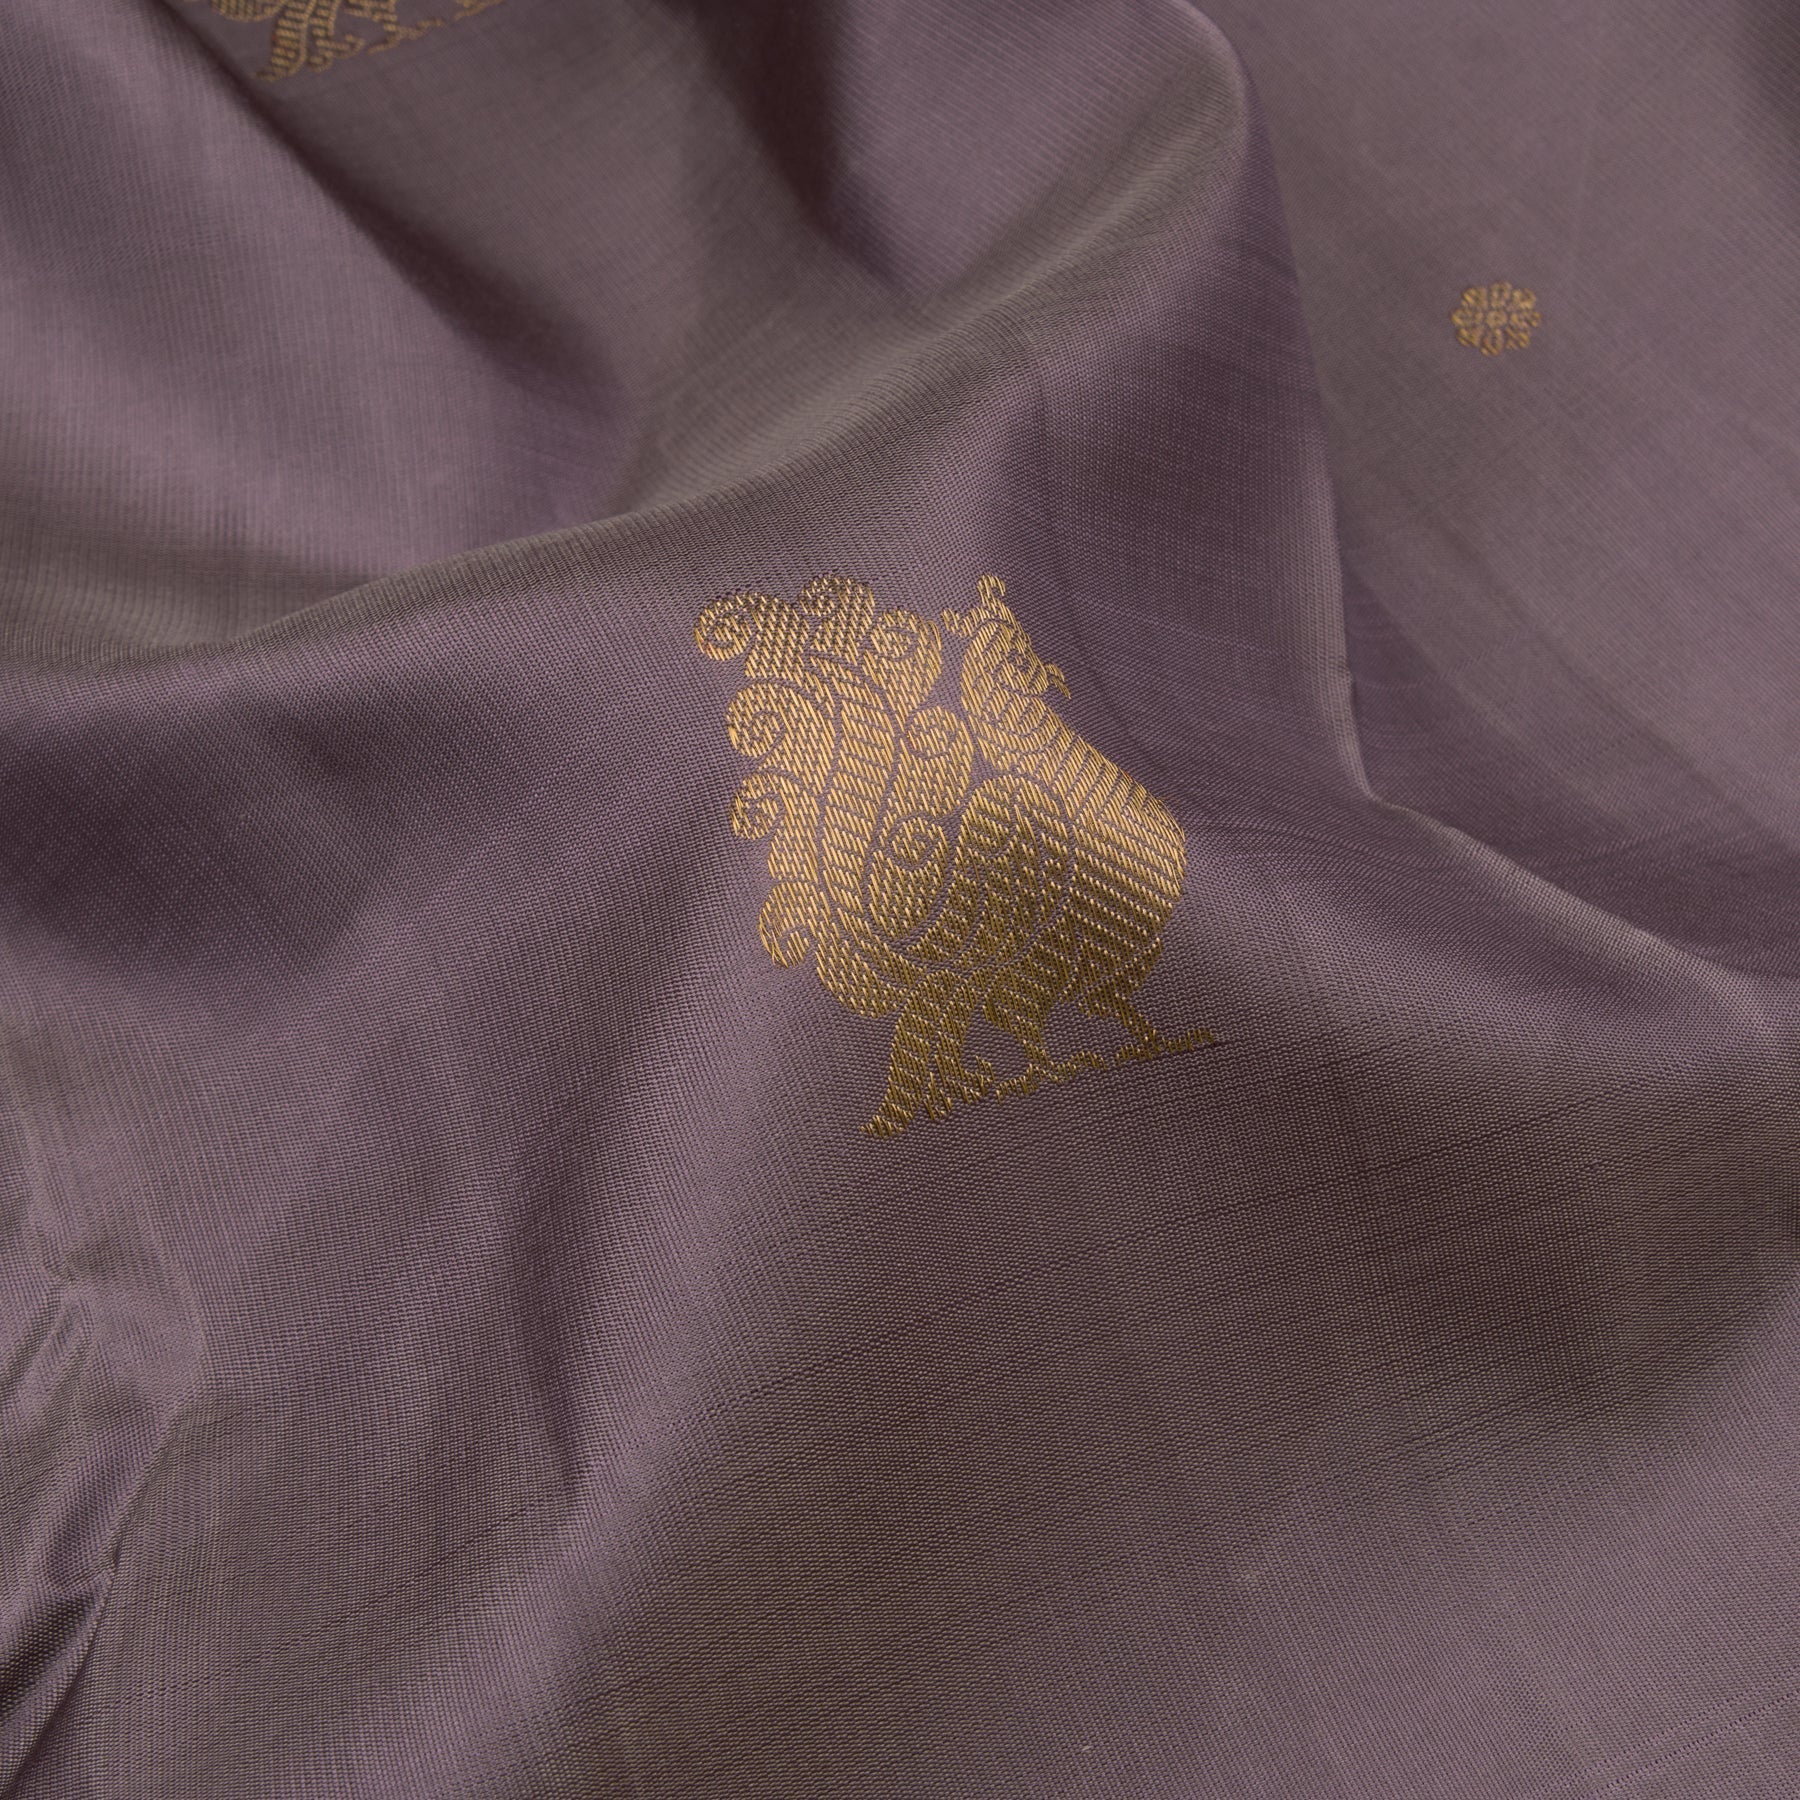 Kanakavalli Kanjivaram Silk Sari 22-595-HS001-08349 - Fabric View